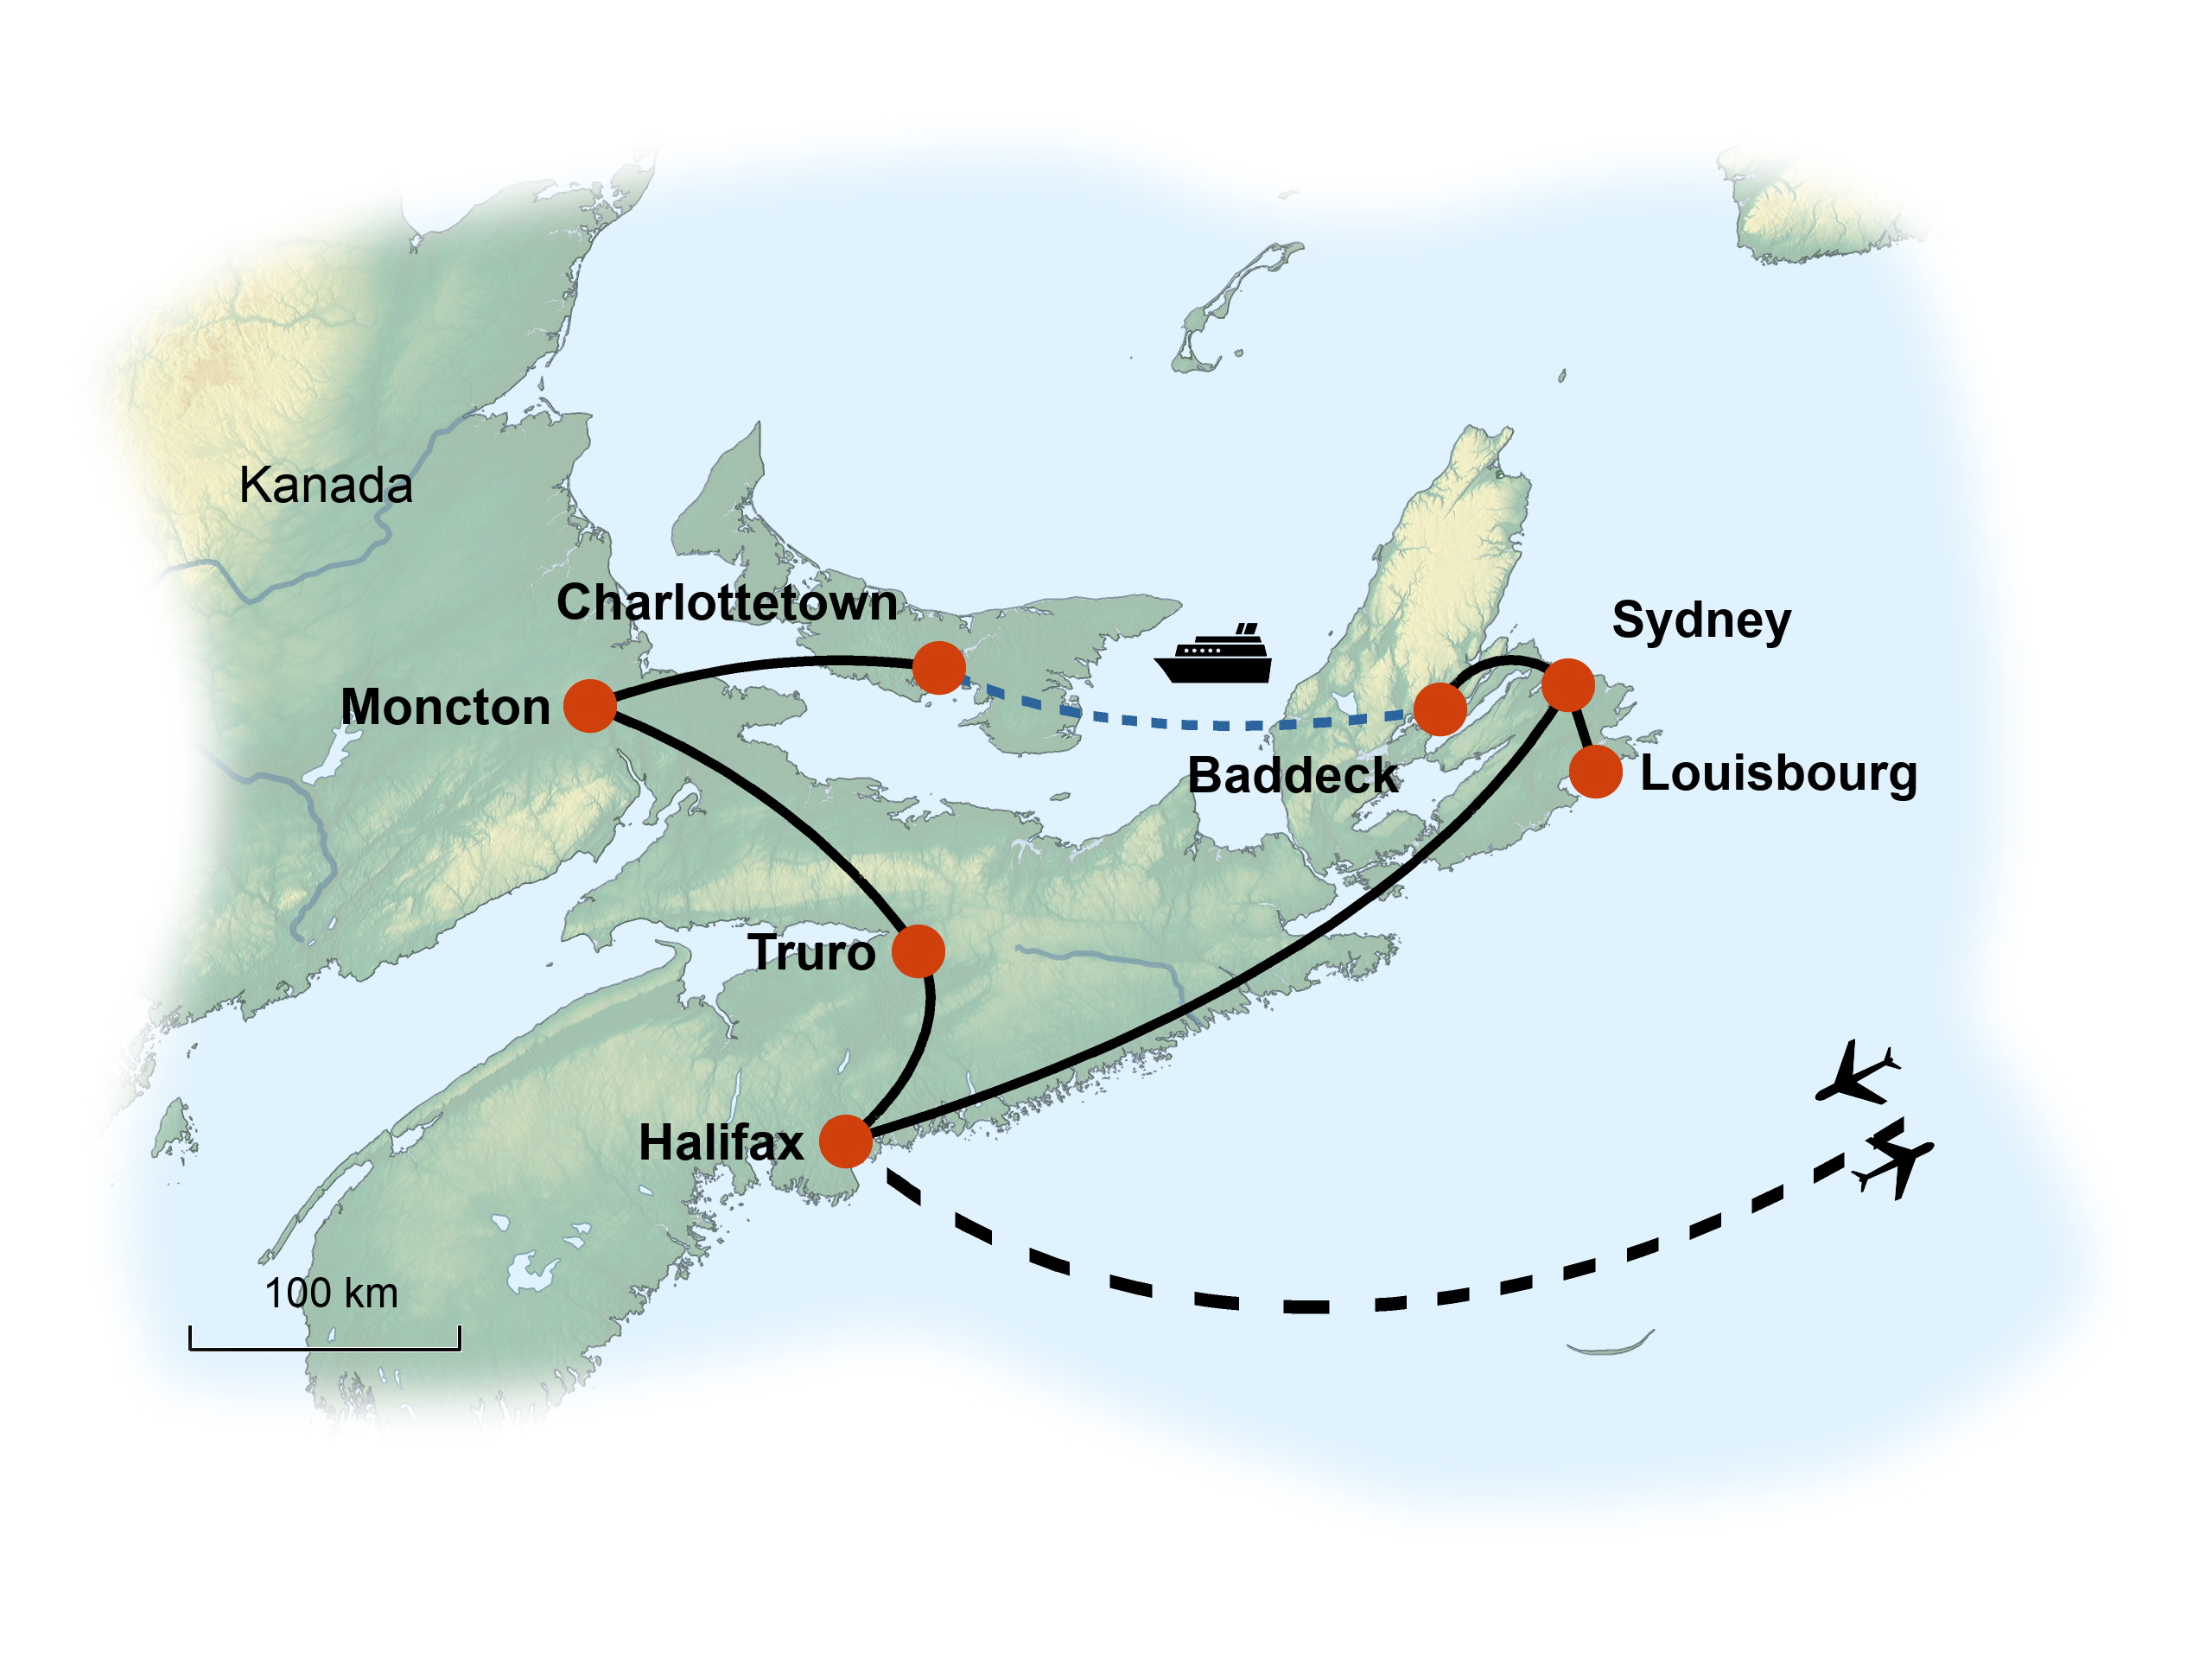 Kanada Ost (Maritim) Karte KIWI Sondergruppenreise